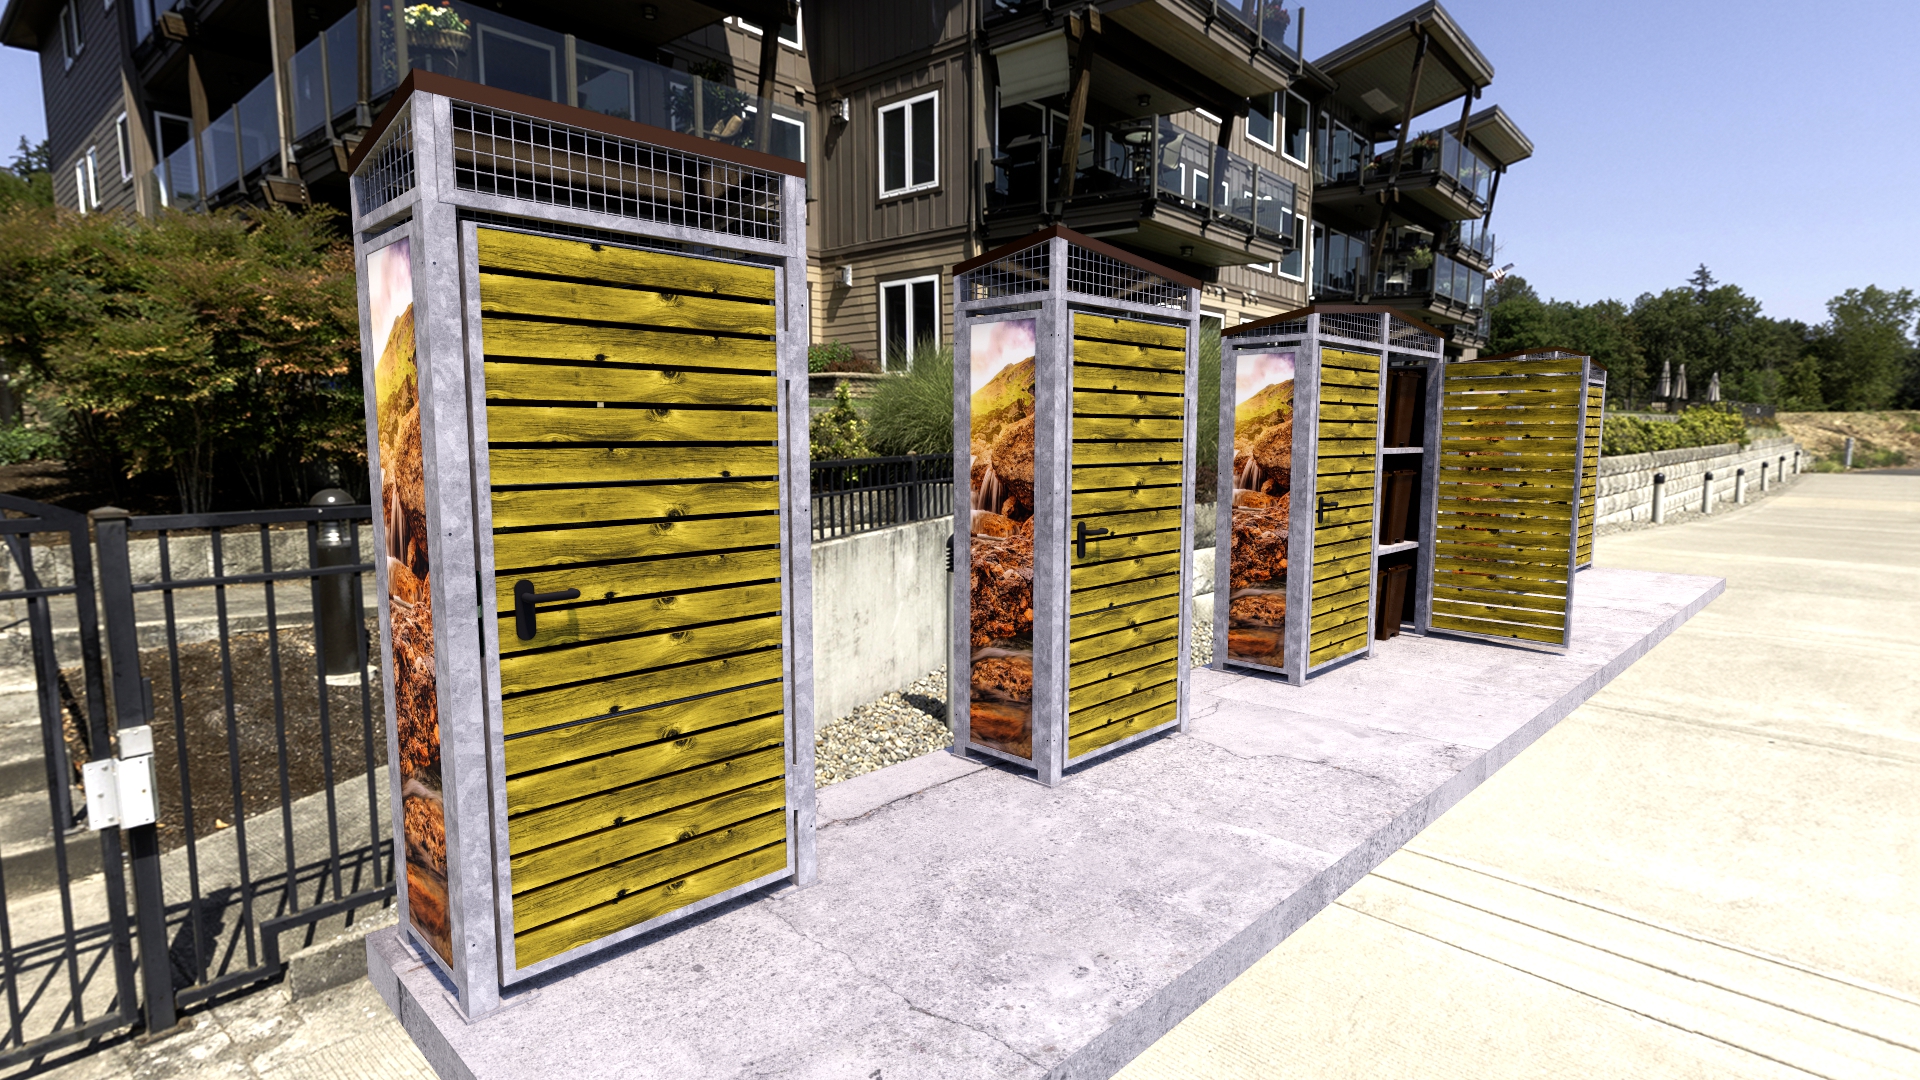  Armaris modulars recollida porta a porta disseny barraca